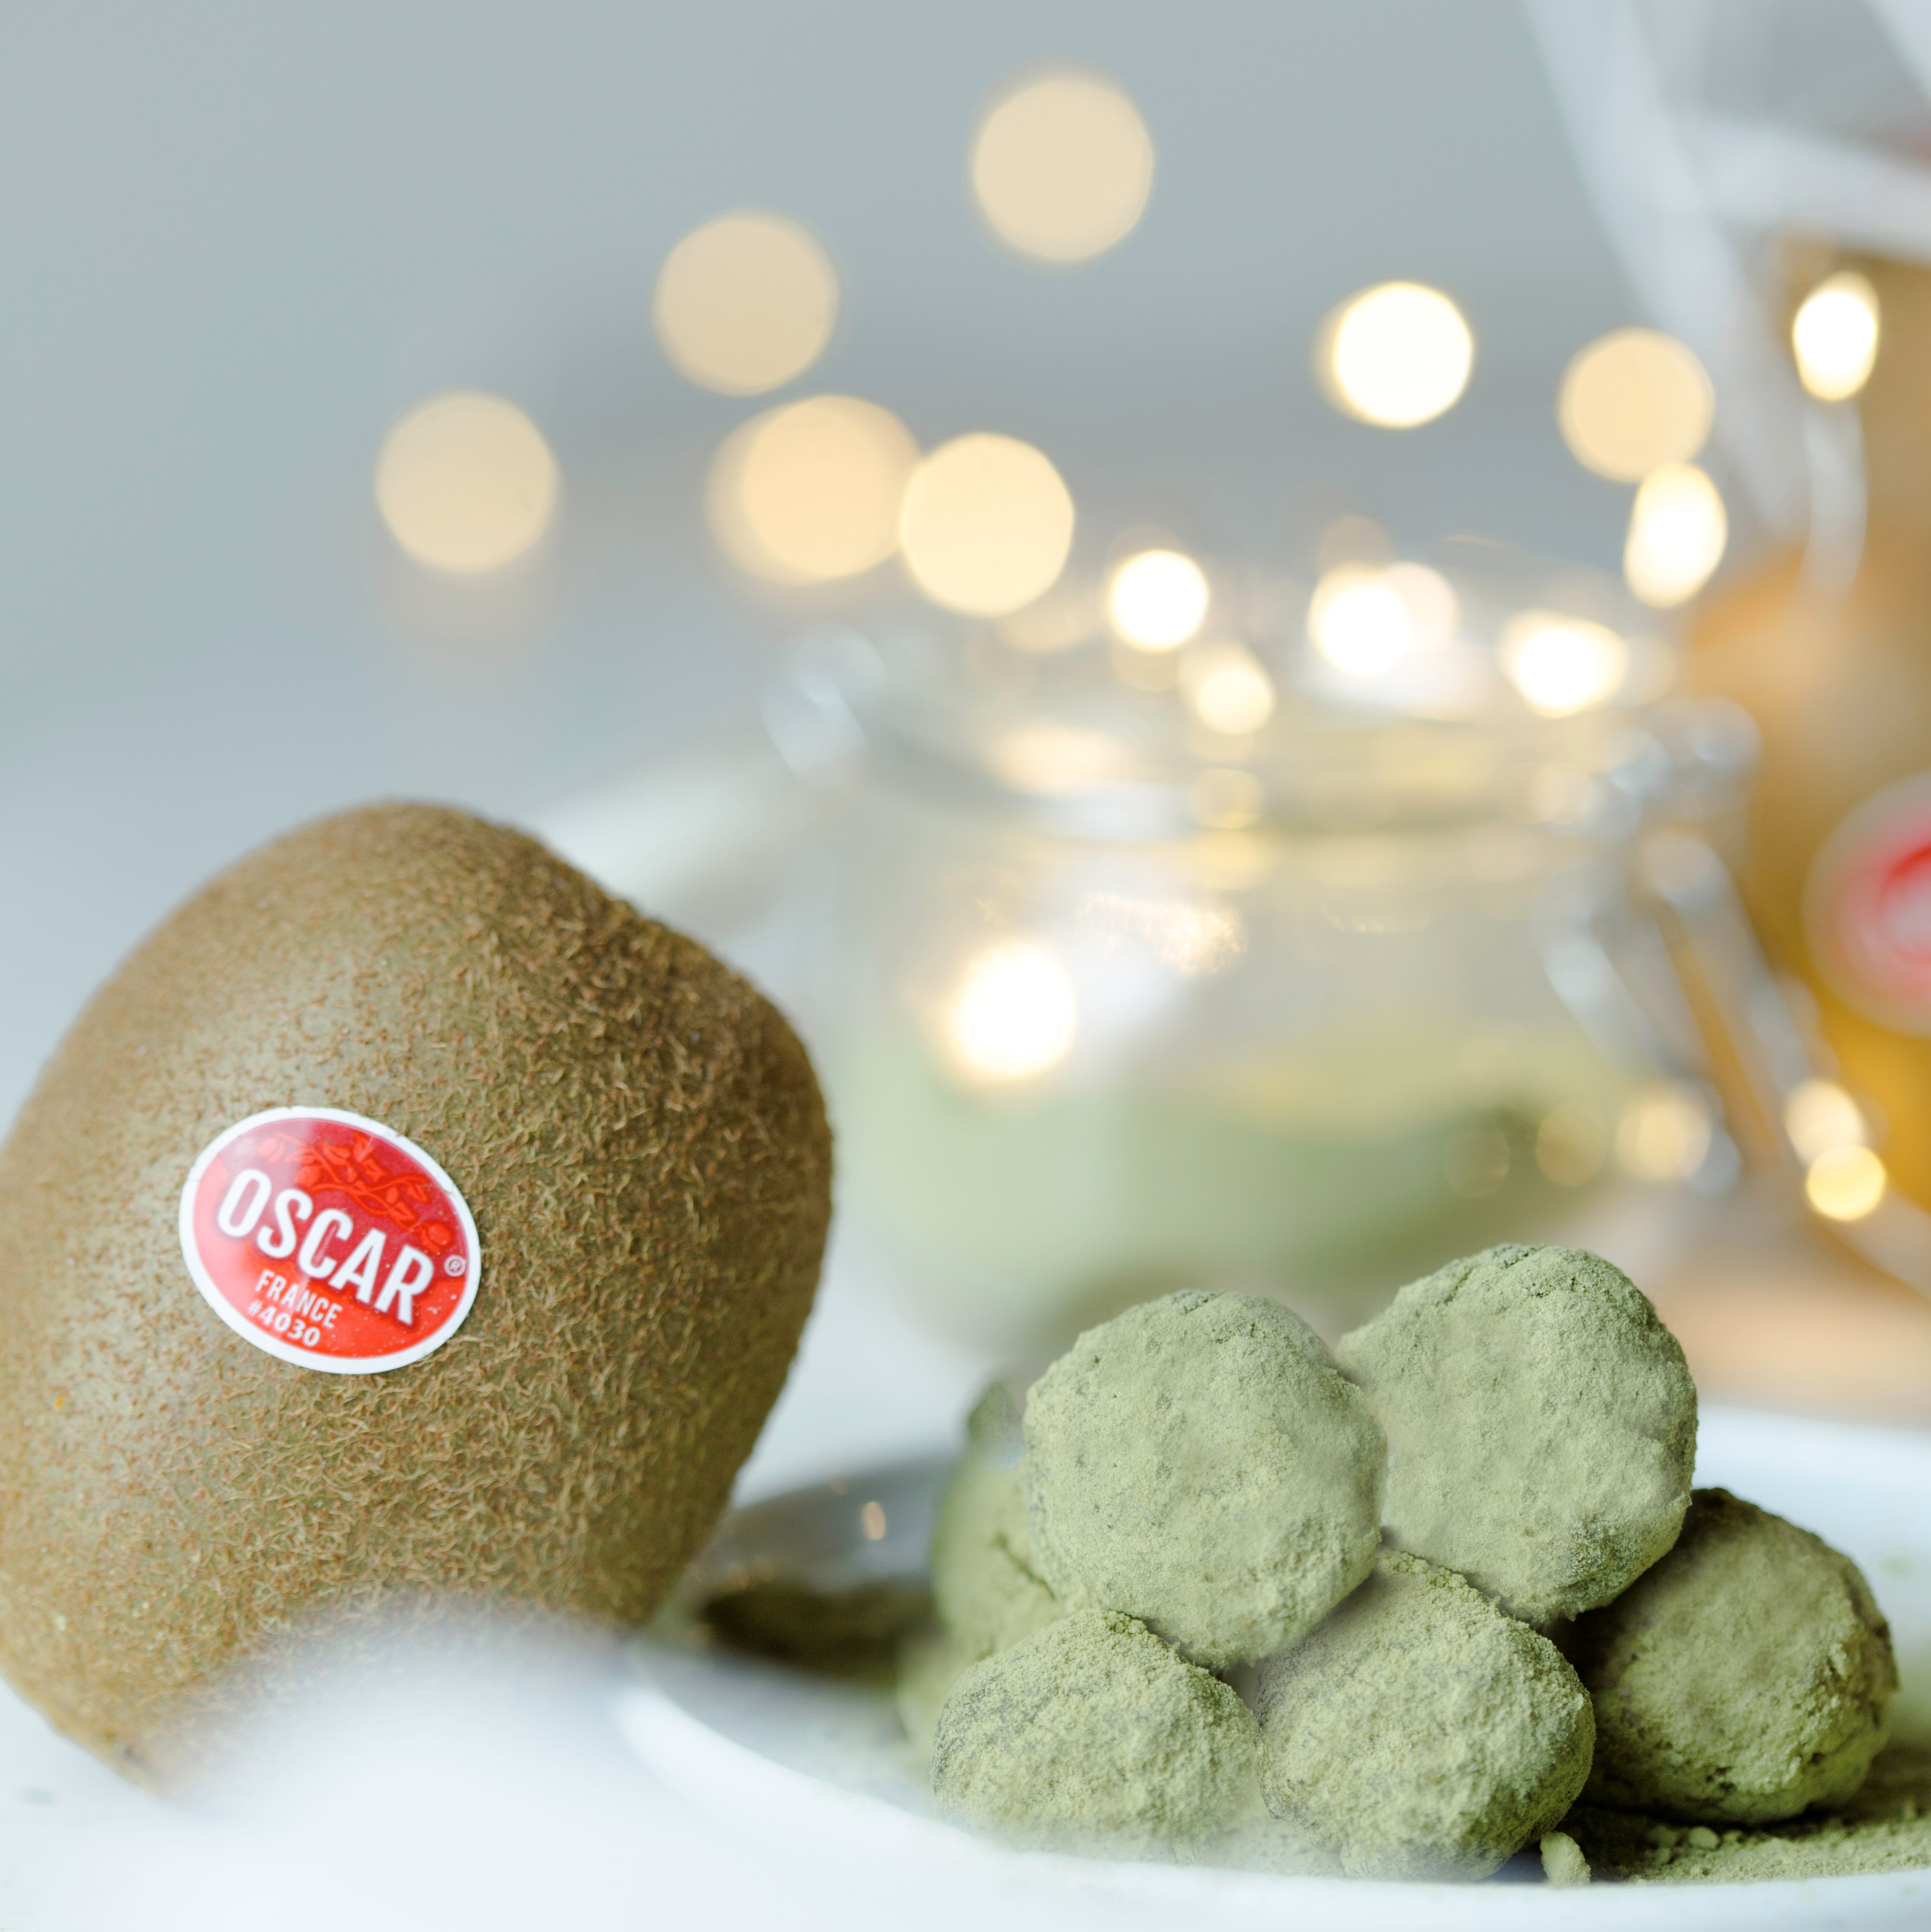 Oscar® kiwi fruits and matcha tea truffles